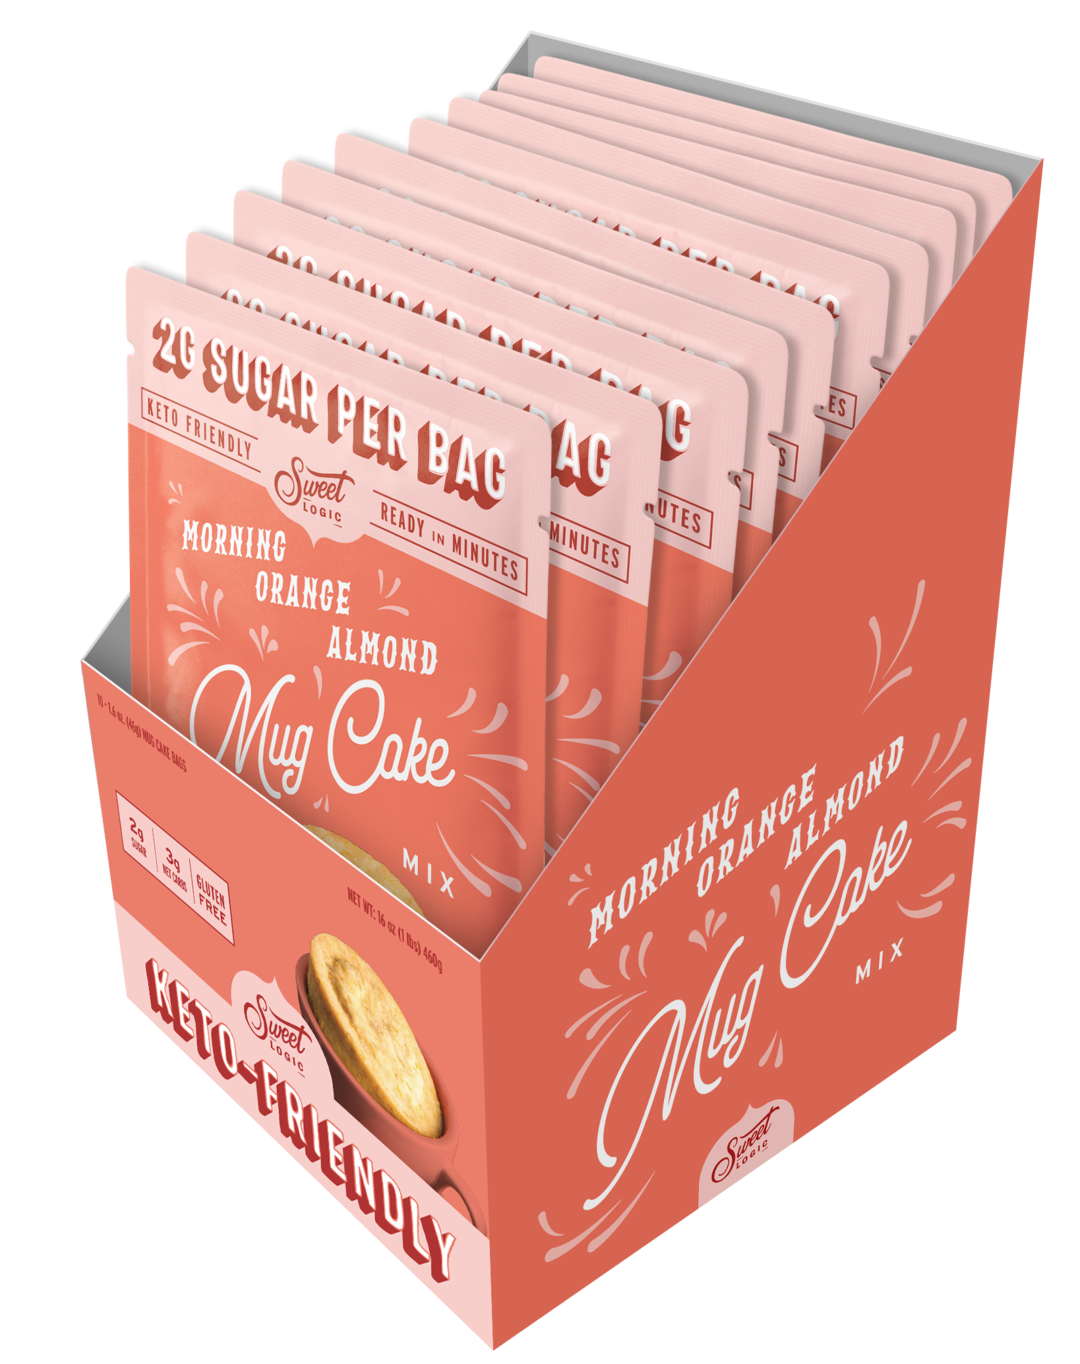 Sweet Logic - Orange Almond Mug Cake (10-Pack) - Retail Box